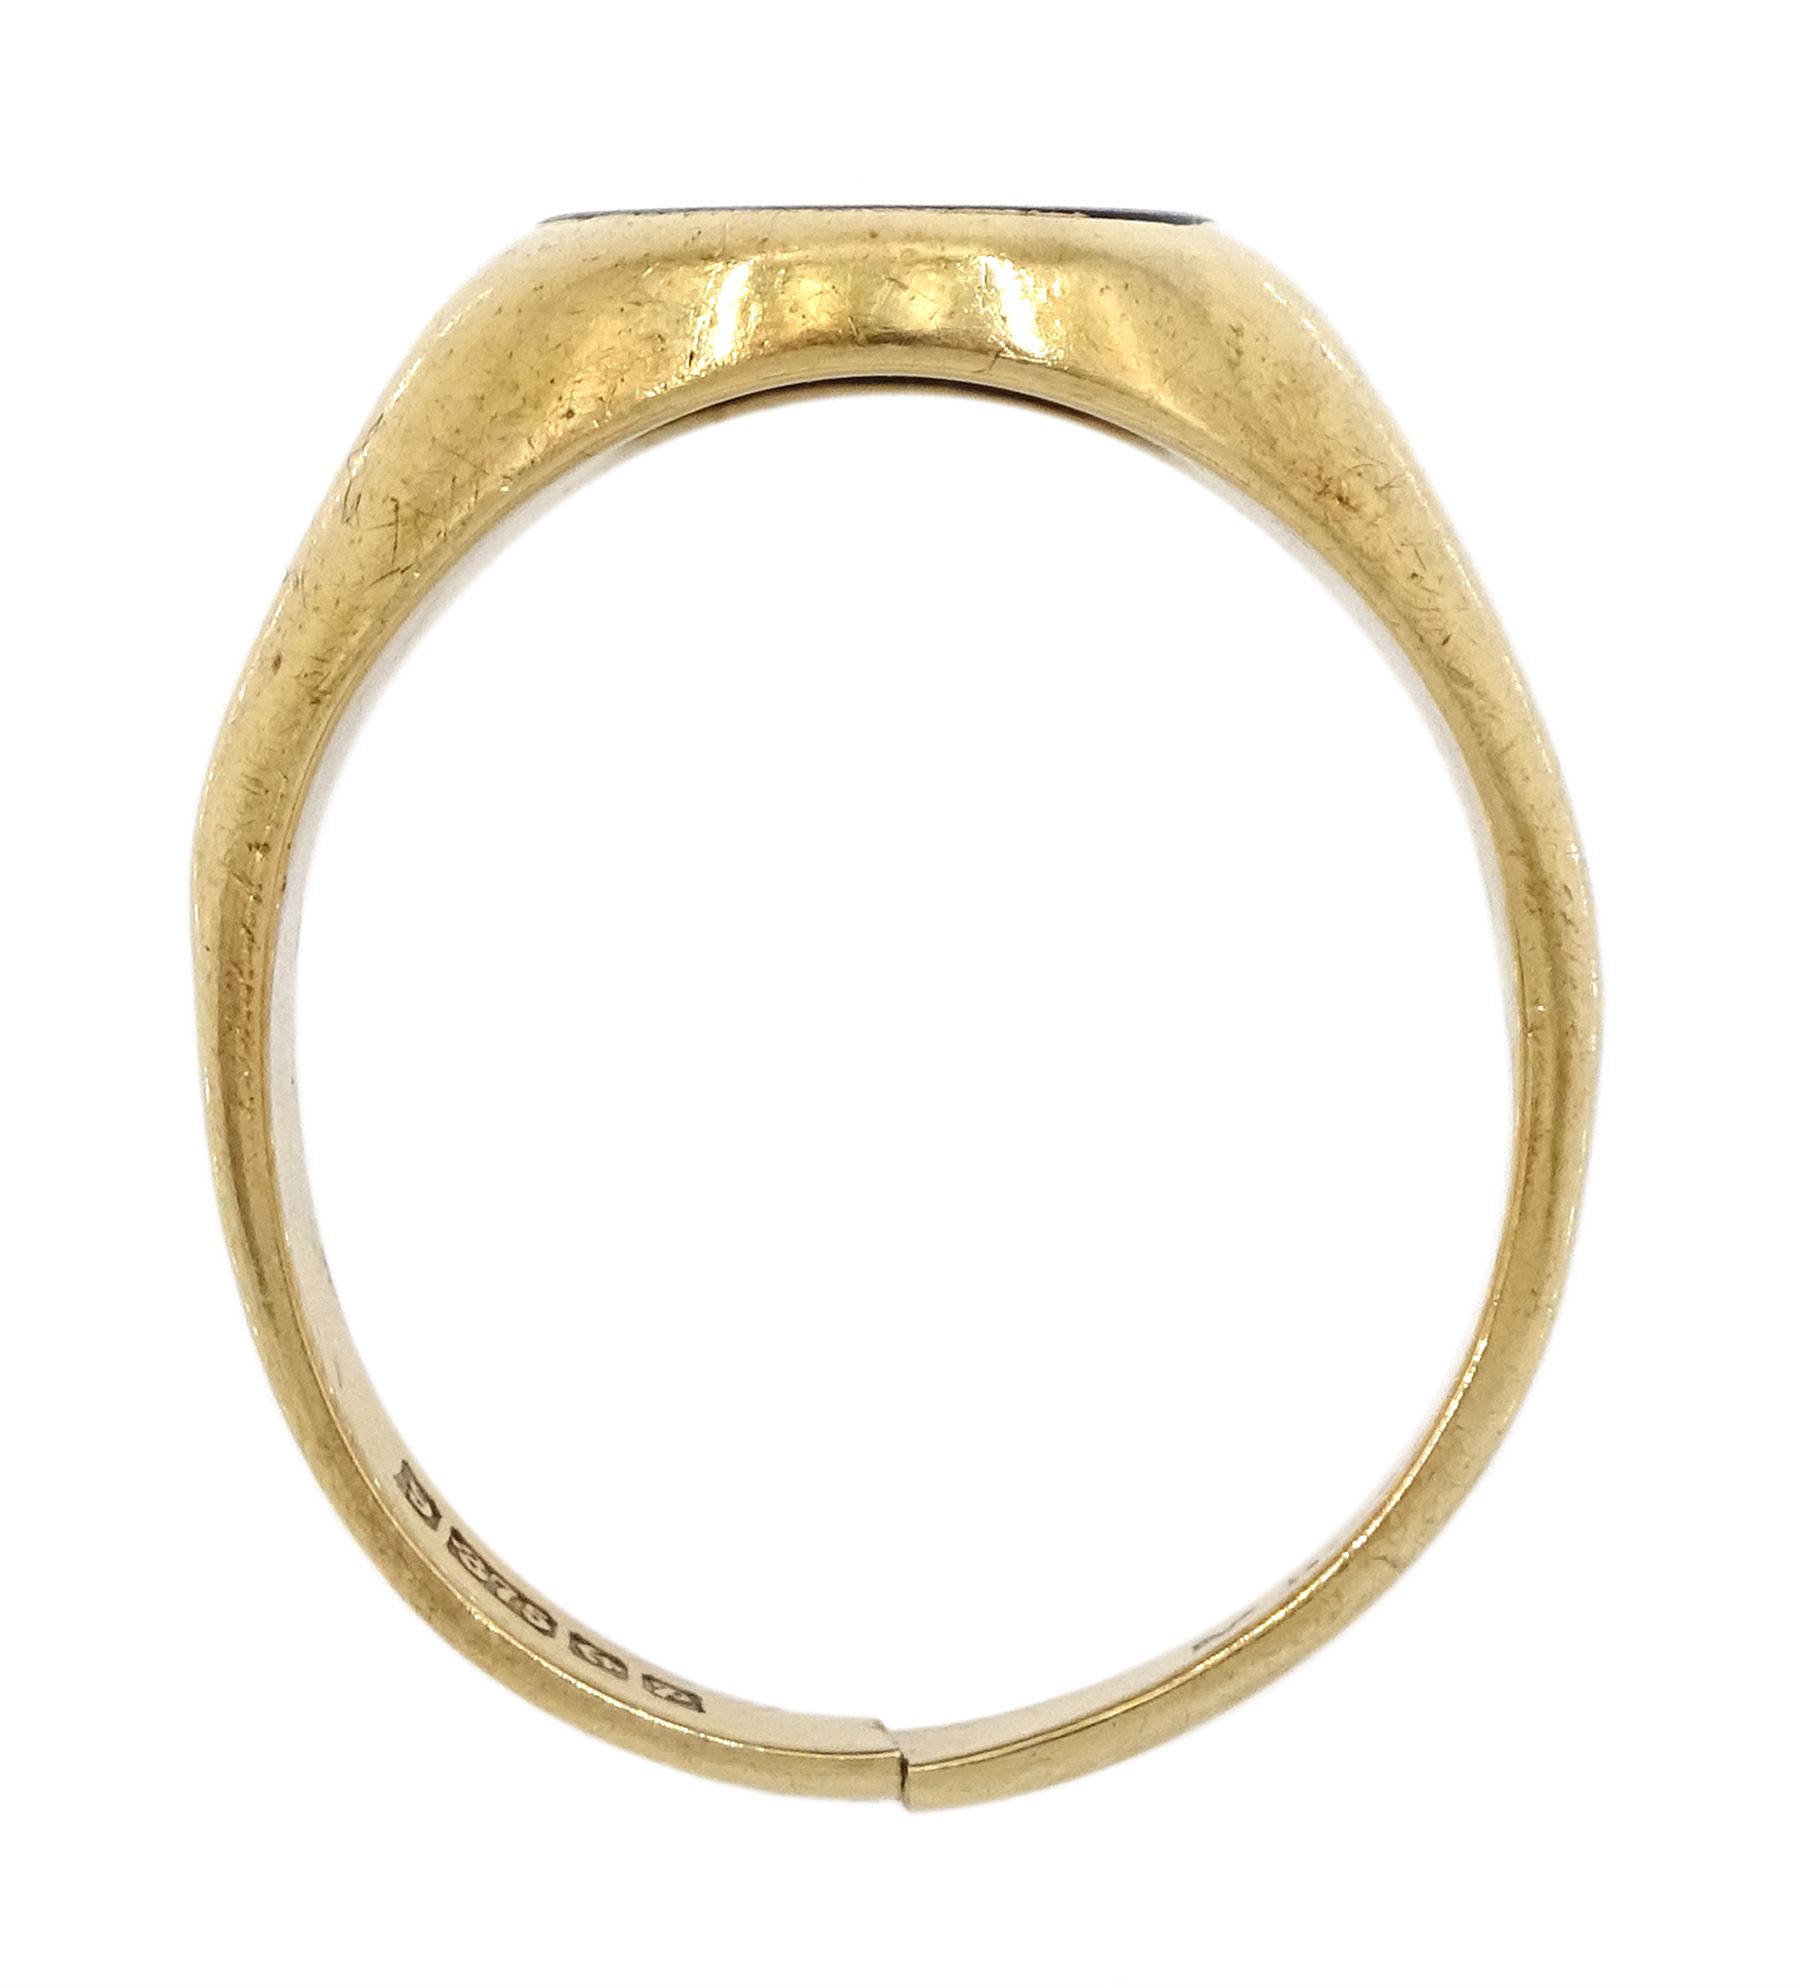 9ct gold single stone black onyx signet ring - Image 3 of 3